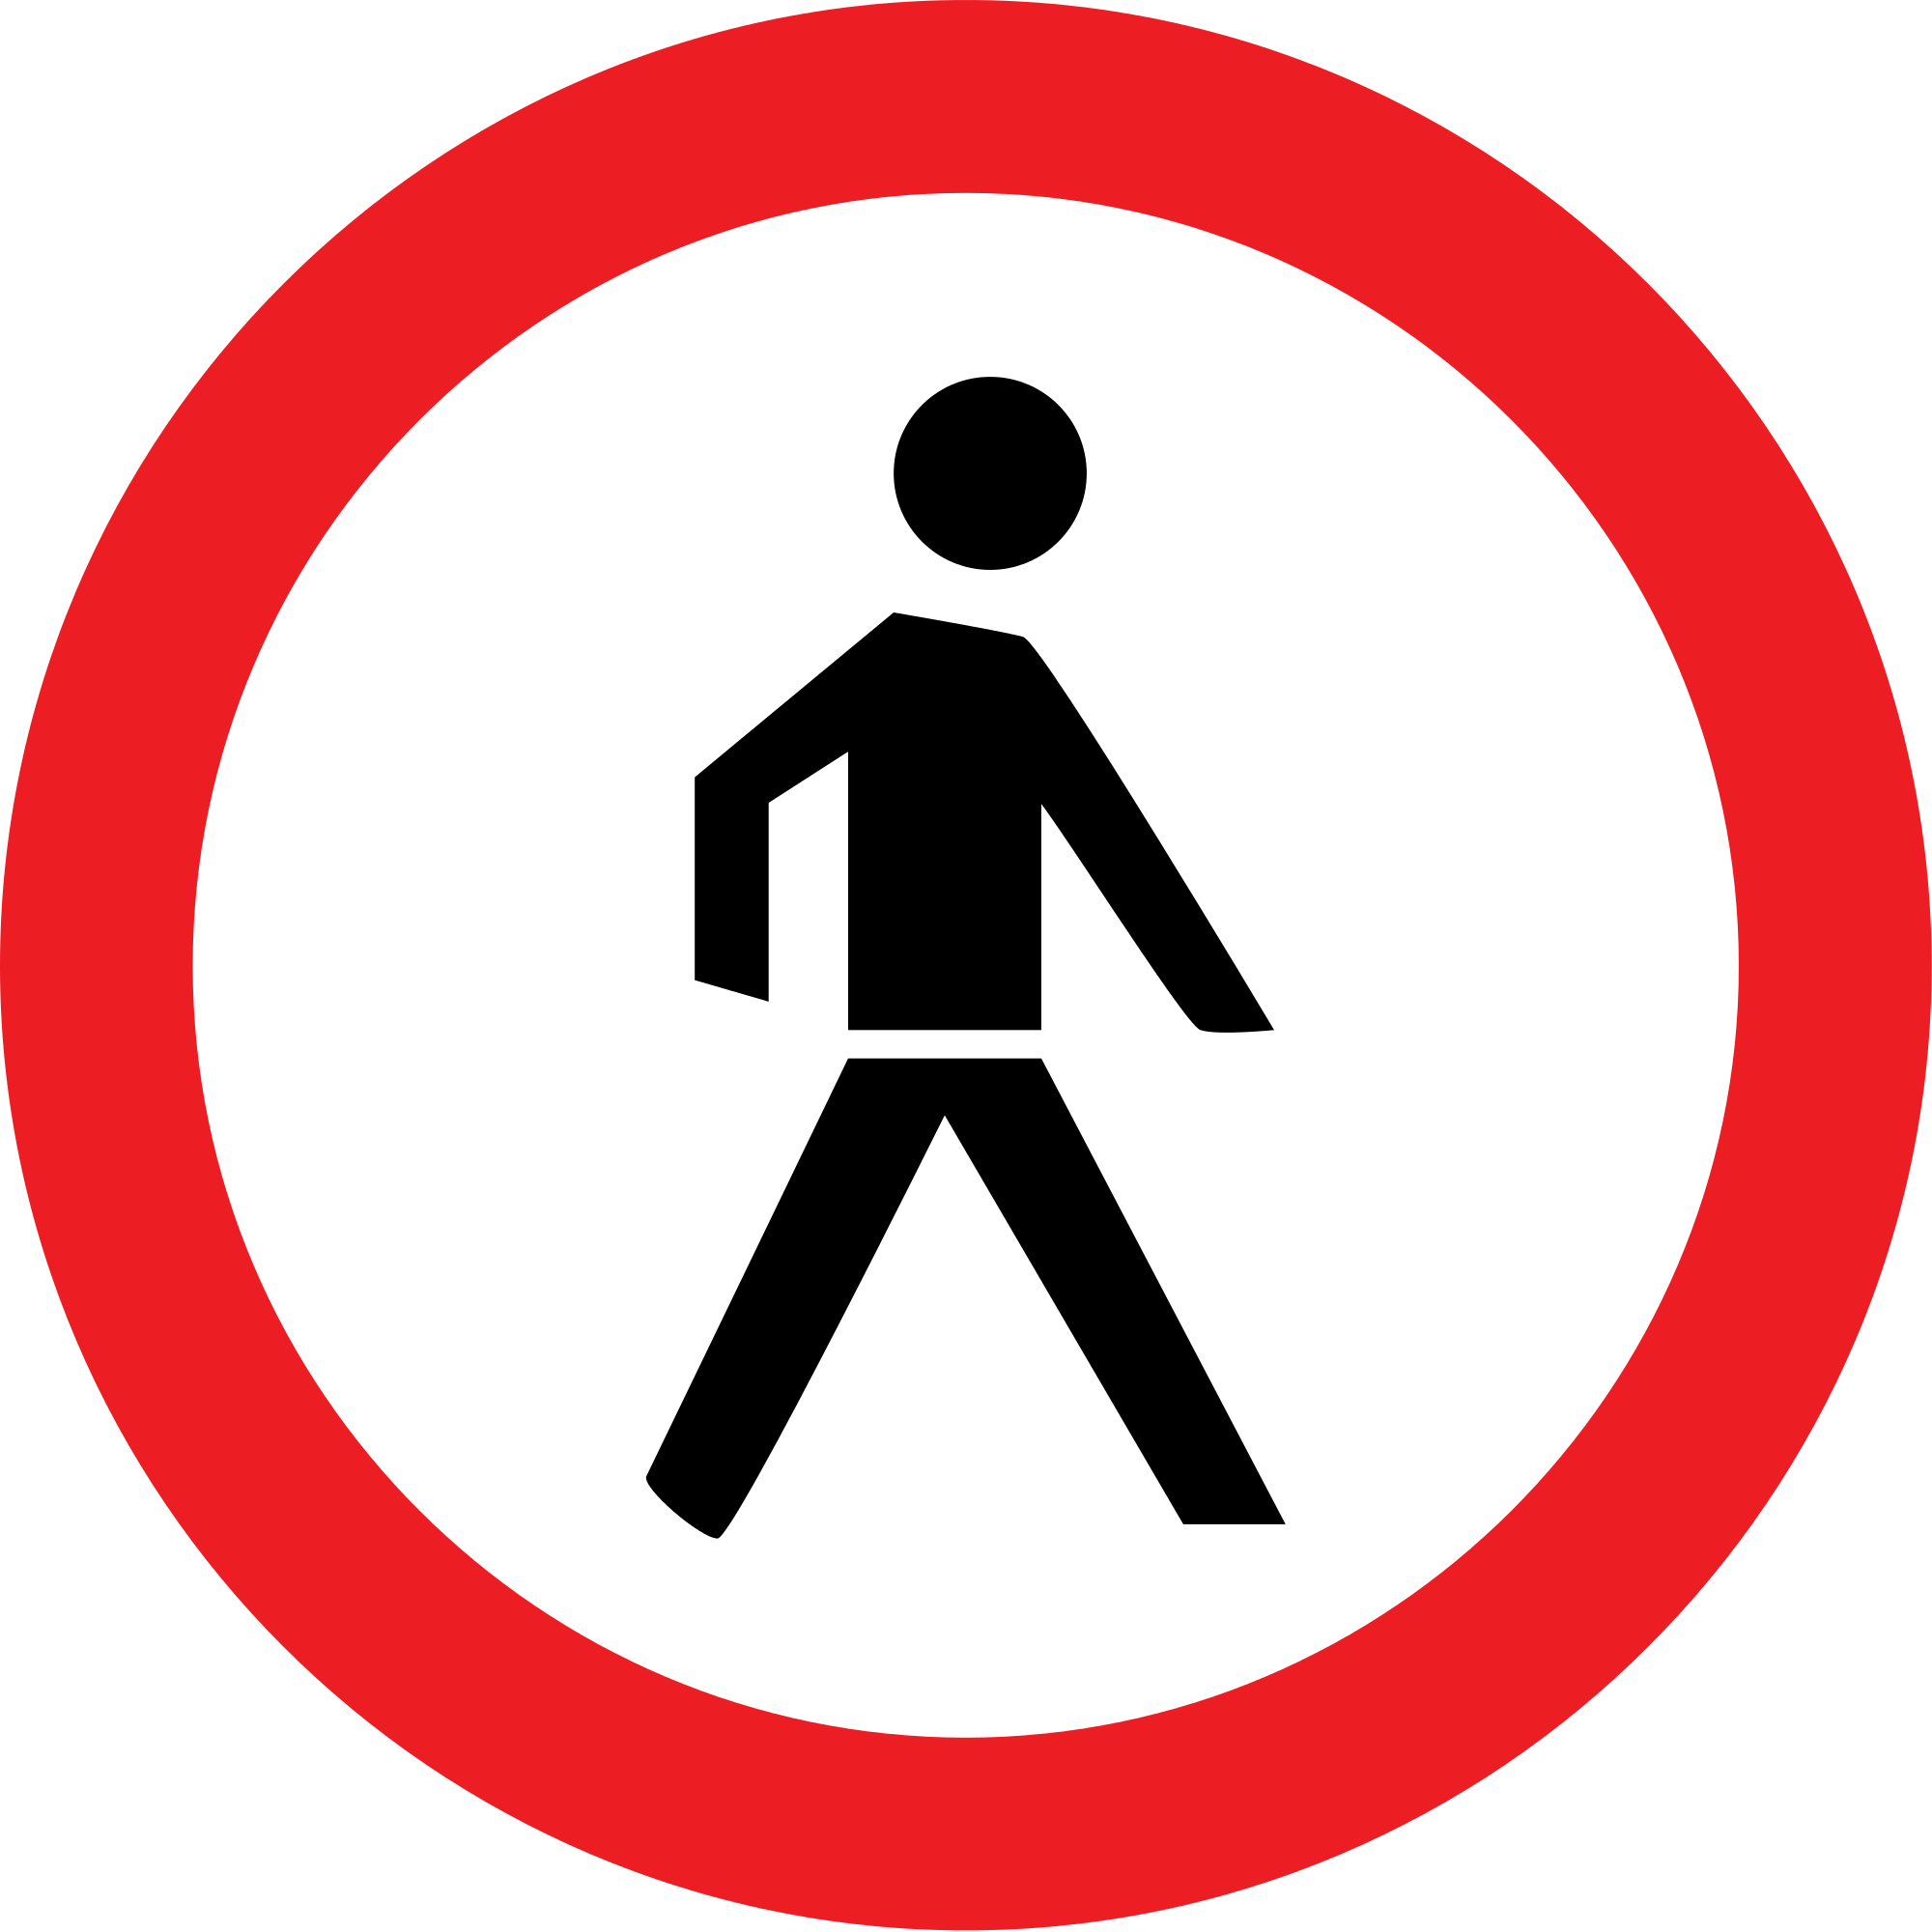 Запрещающий переход пешеходом. Знак движение пешеходов запрещено. Запрещающие знаки для пешеходов. Знак пешеходный переход запрещен. Пешеходам проход запрещен.